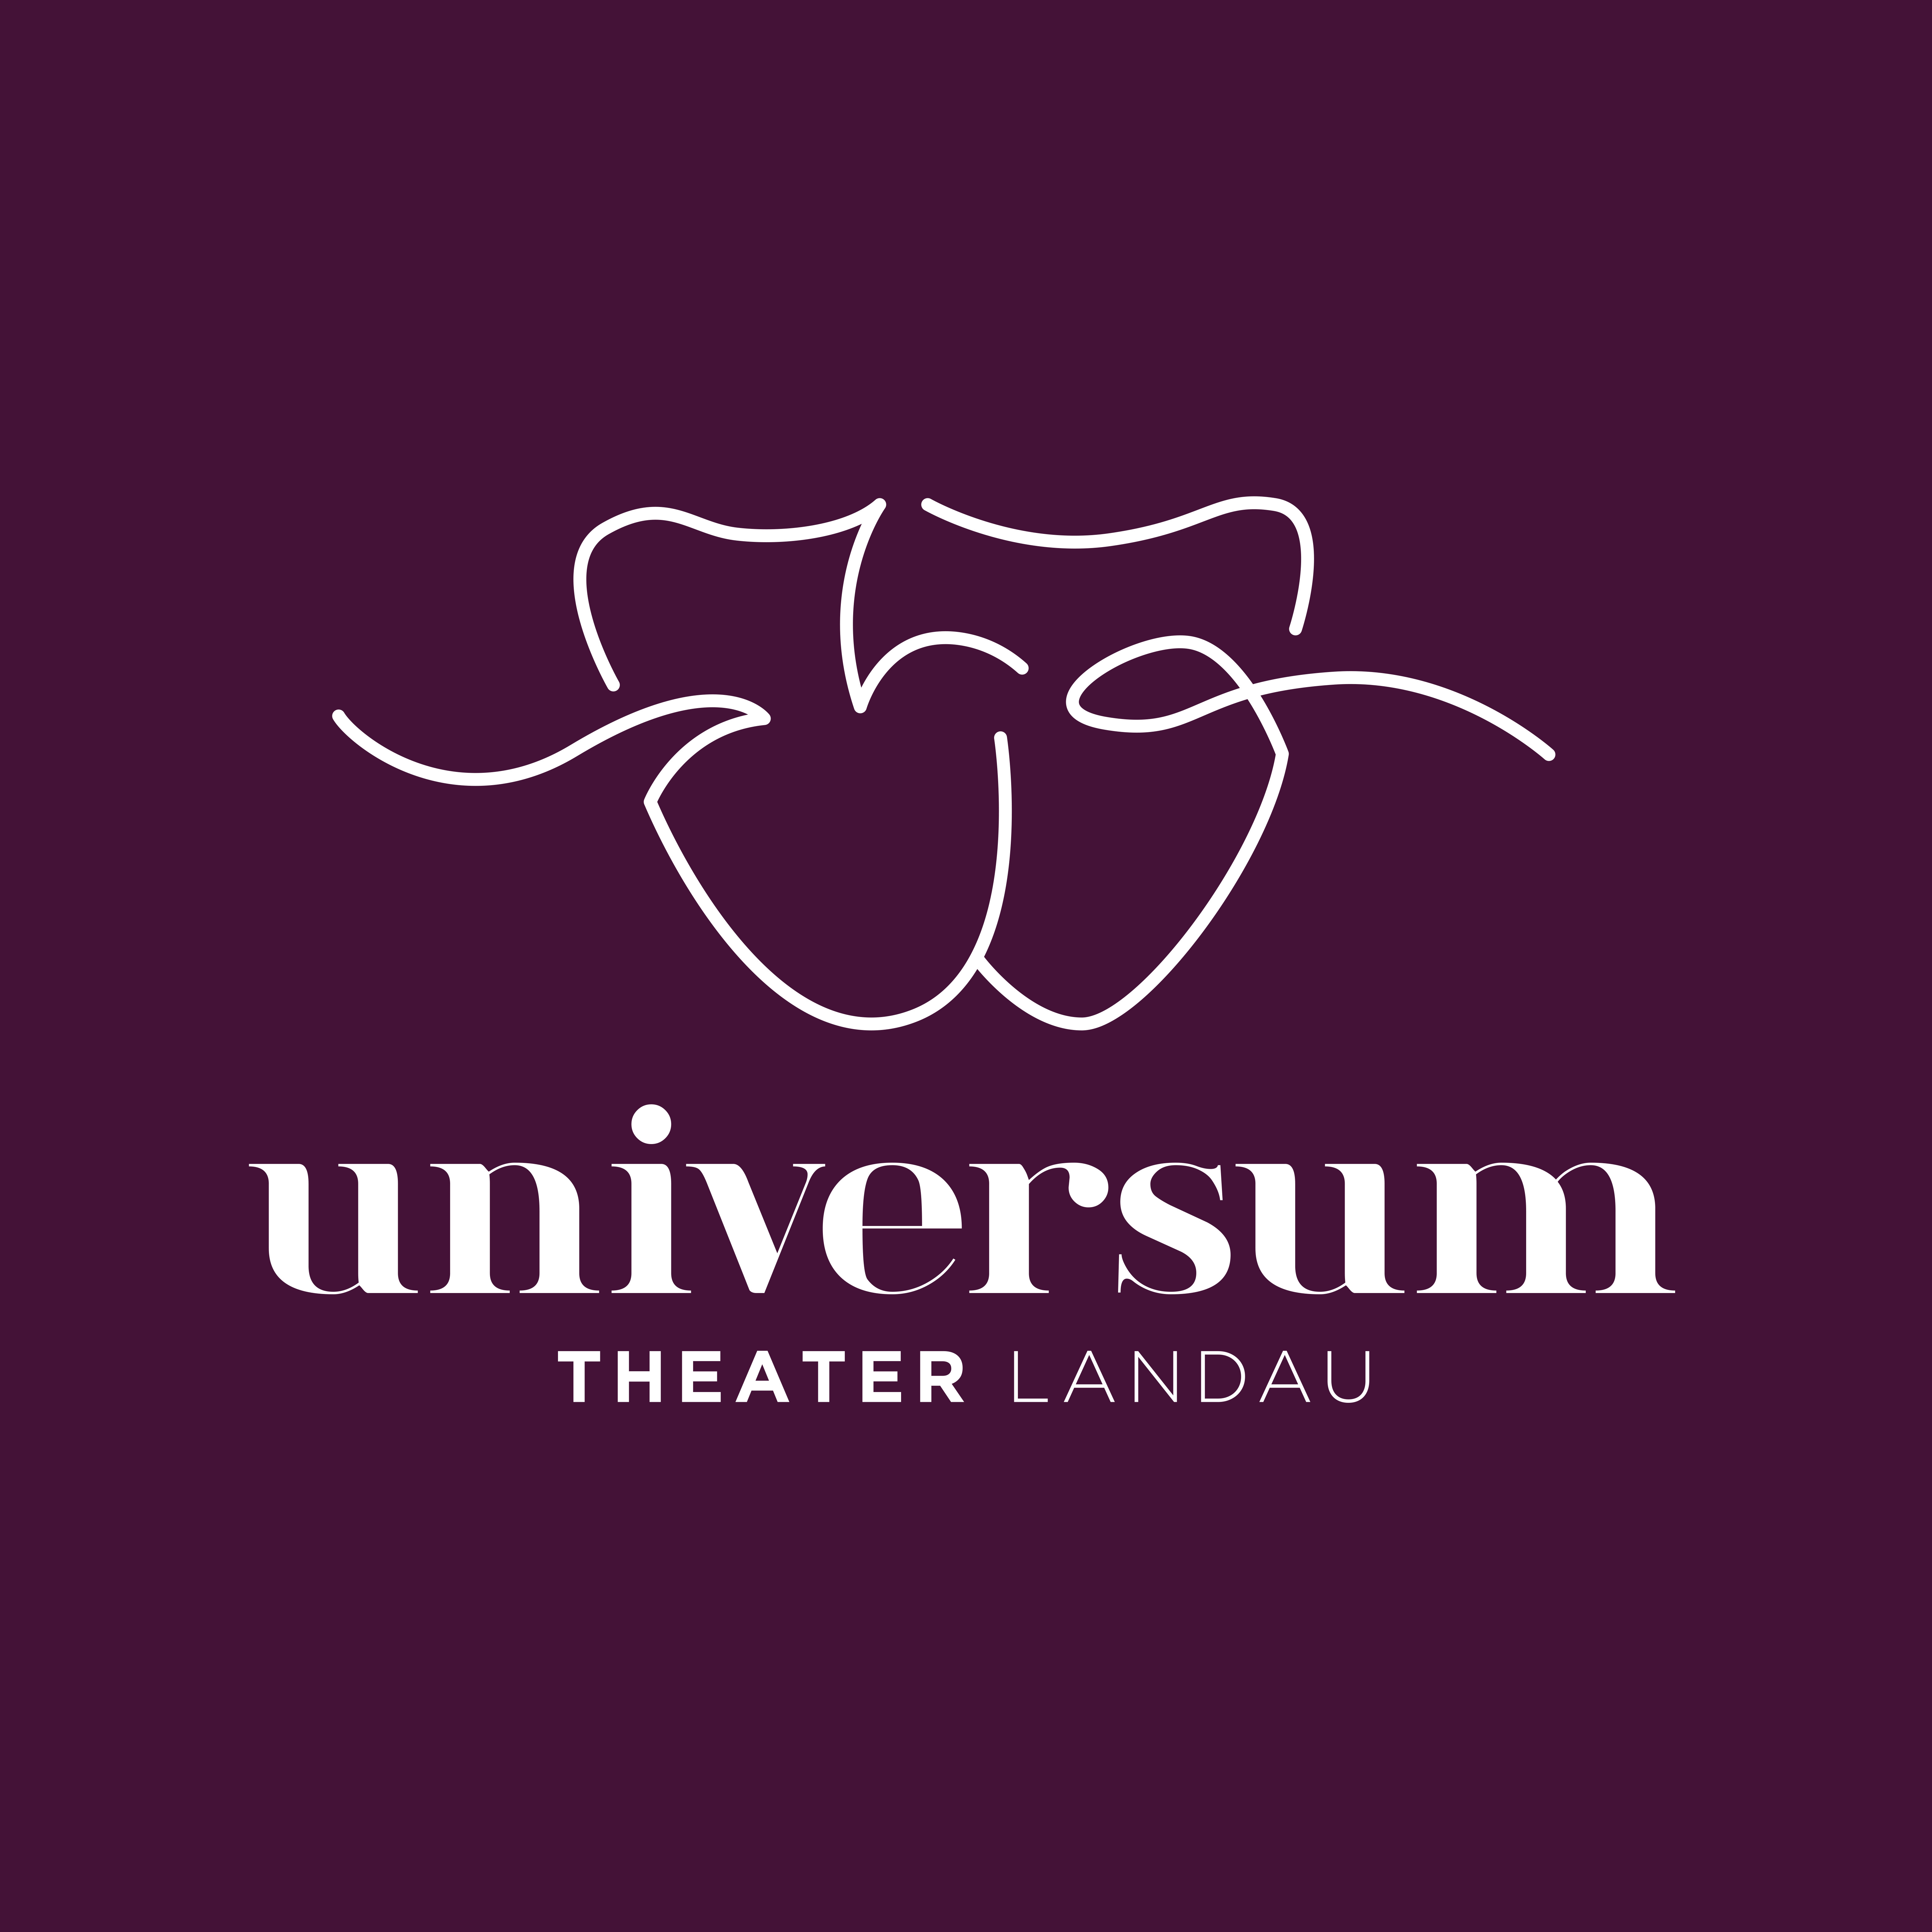 Universum Theater Landau